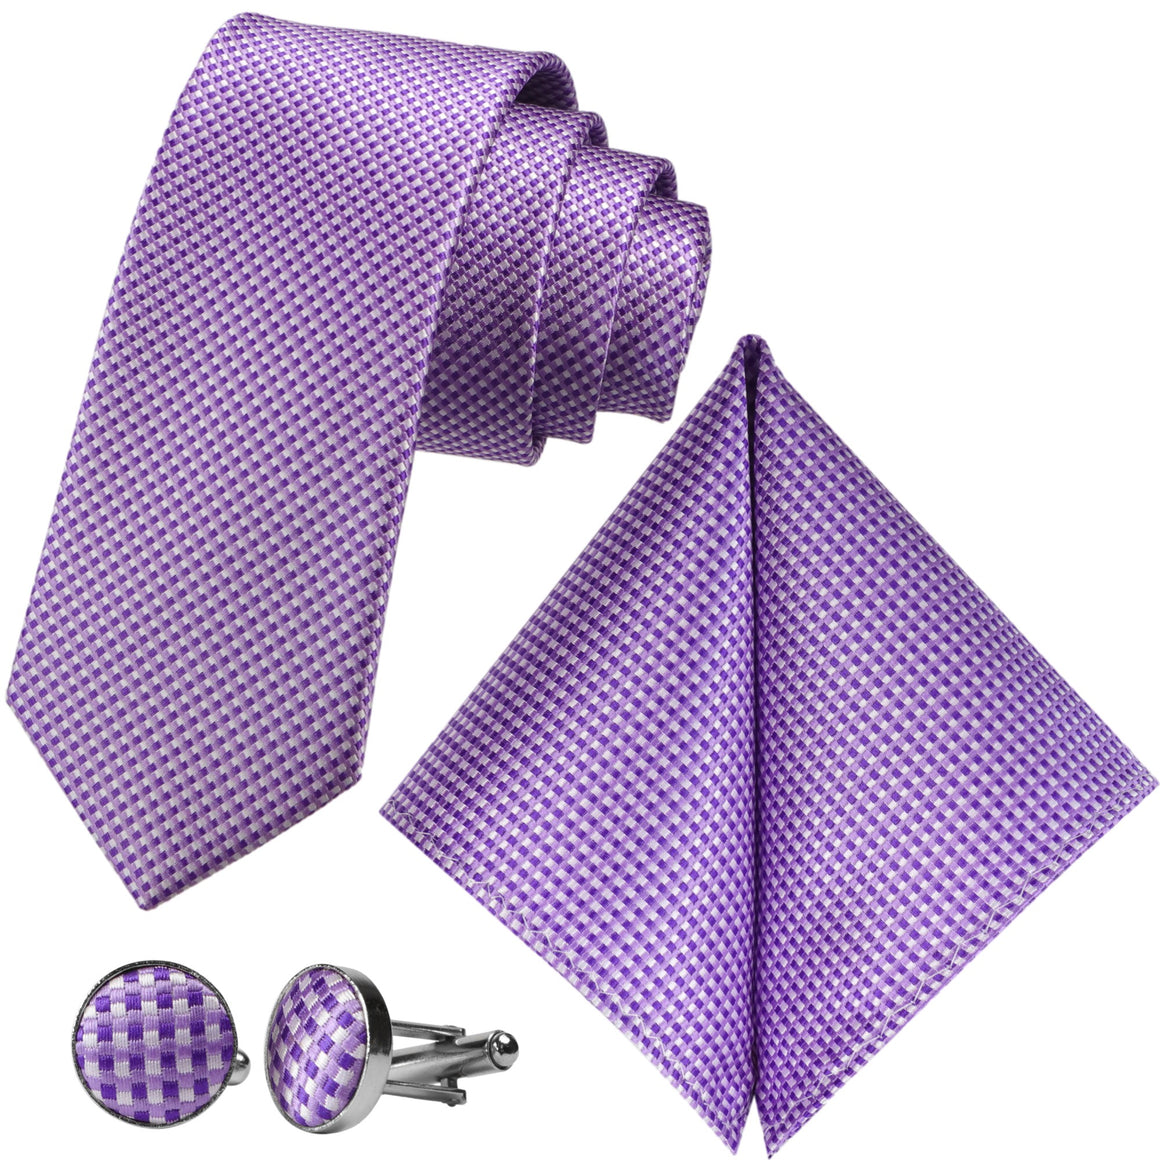 GASSANI 3 pz. Set, cravatta da uomo a scacchi viola e bianca stretta 7 cm, cravatta da sposa, set cravatta, cravatta da uomo, fazzoletto, gemelli